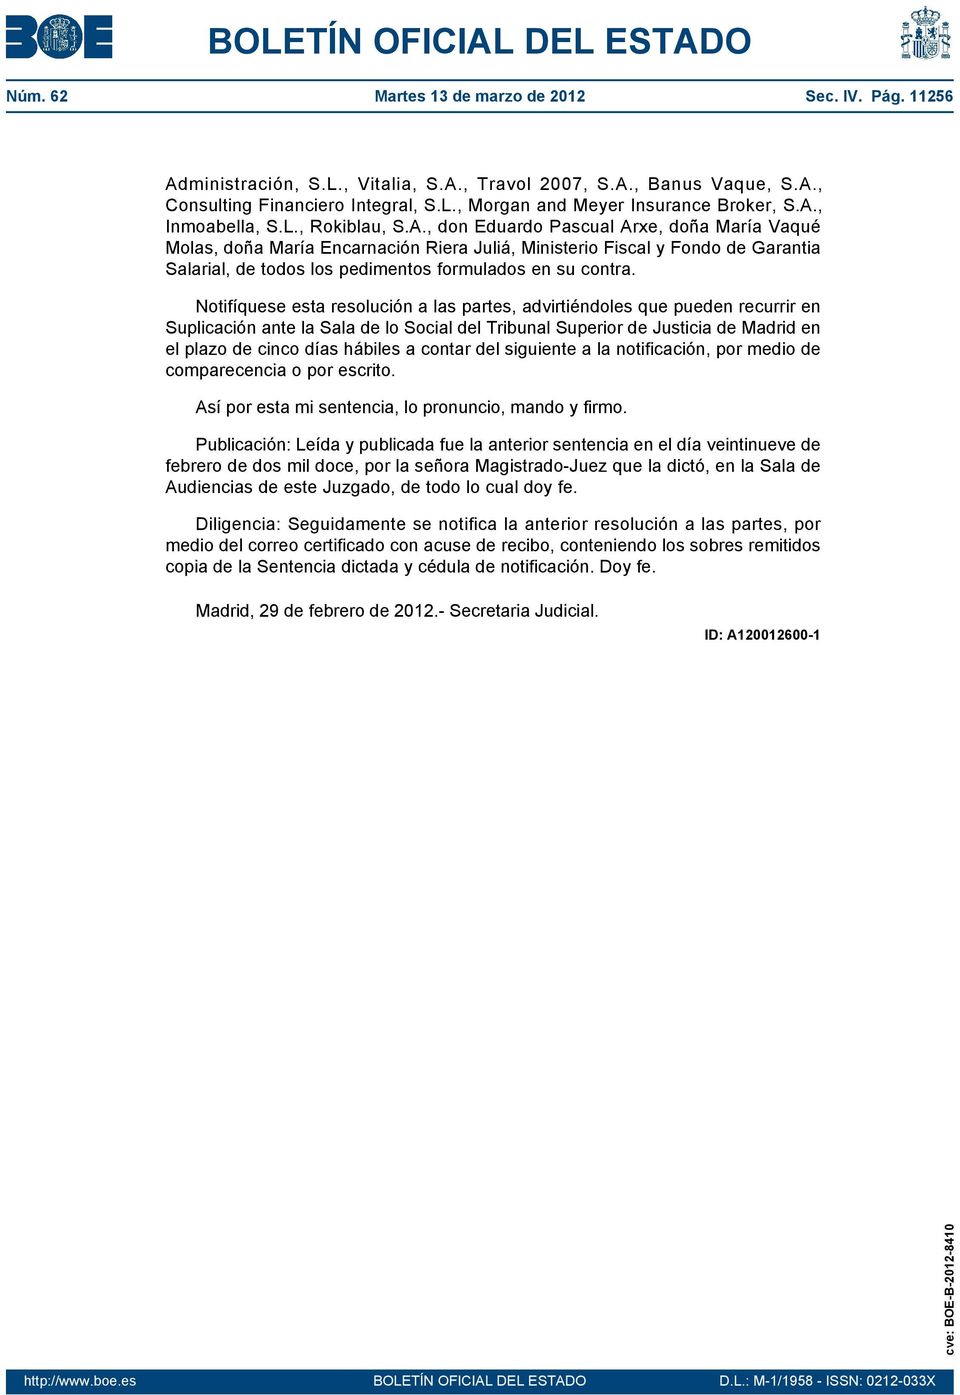 Notifíquese esta resolución a las partes, advirtiéndoles que pueden recurrir en Suplicación ante la Sala de lo Social del Tribunal Superior de Justicia de Madrid en el plazo de cinco días hábiles a